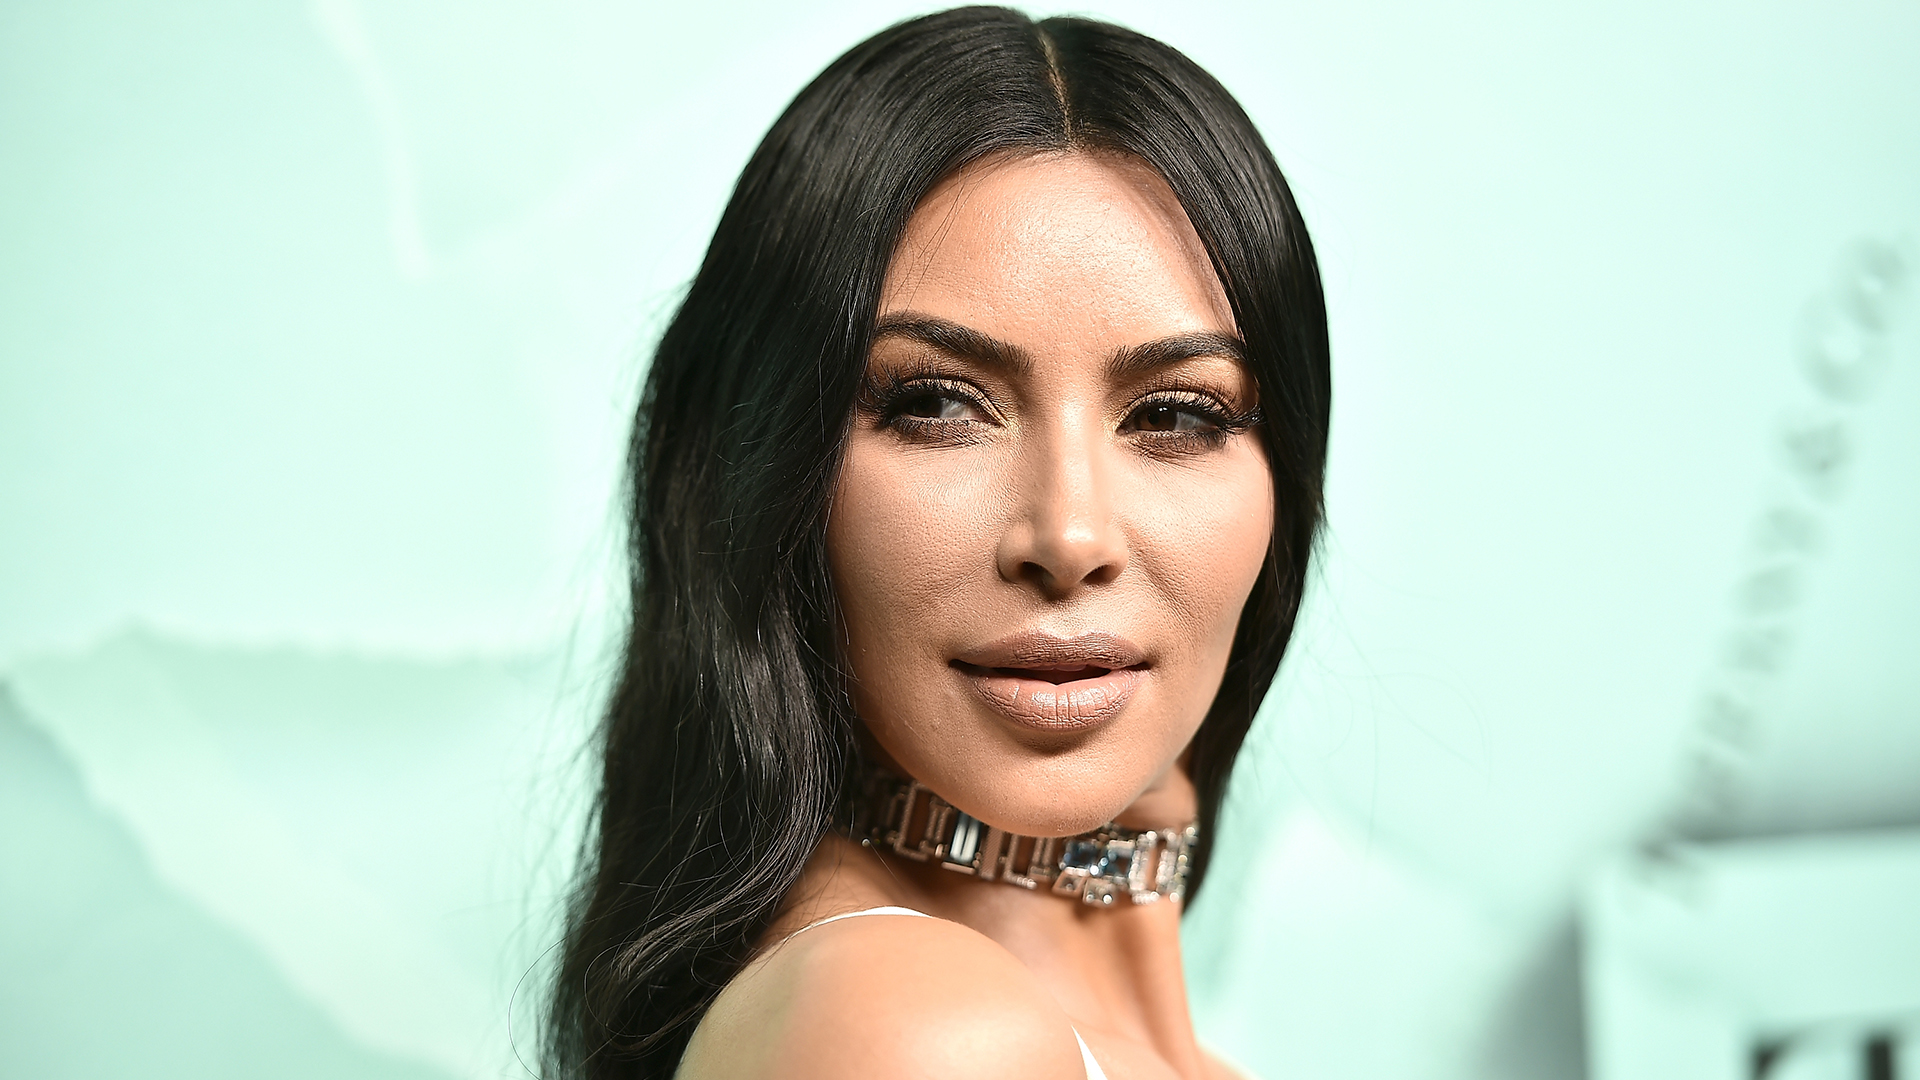 Kim Kardashian exhibe un Close Up de su psoriasis facial (FOTO)